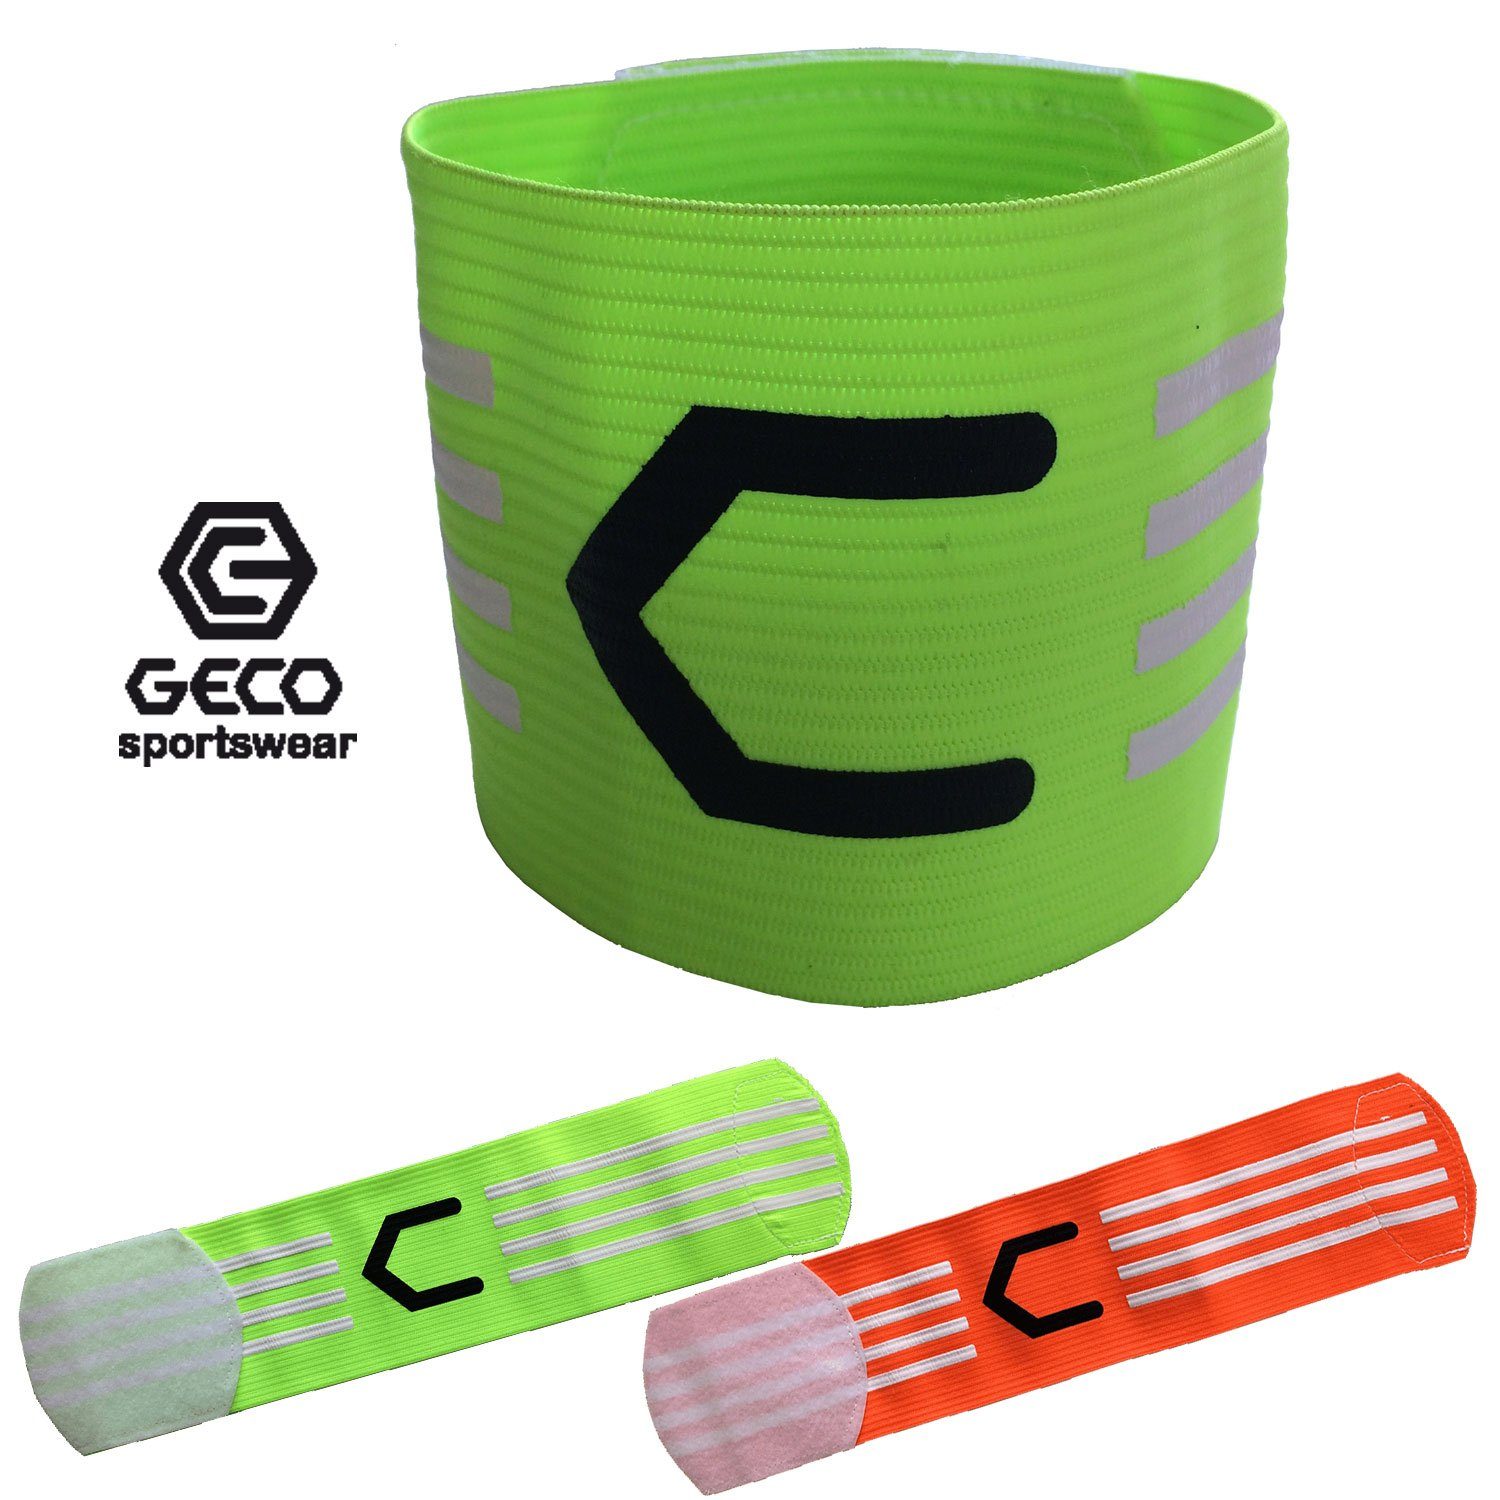 Geco Sportswear Kapitänsbinde Geco Kapitänsbinde orange, Fußball orange grün Farben NEON oder grün neon und